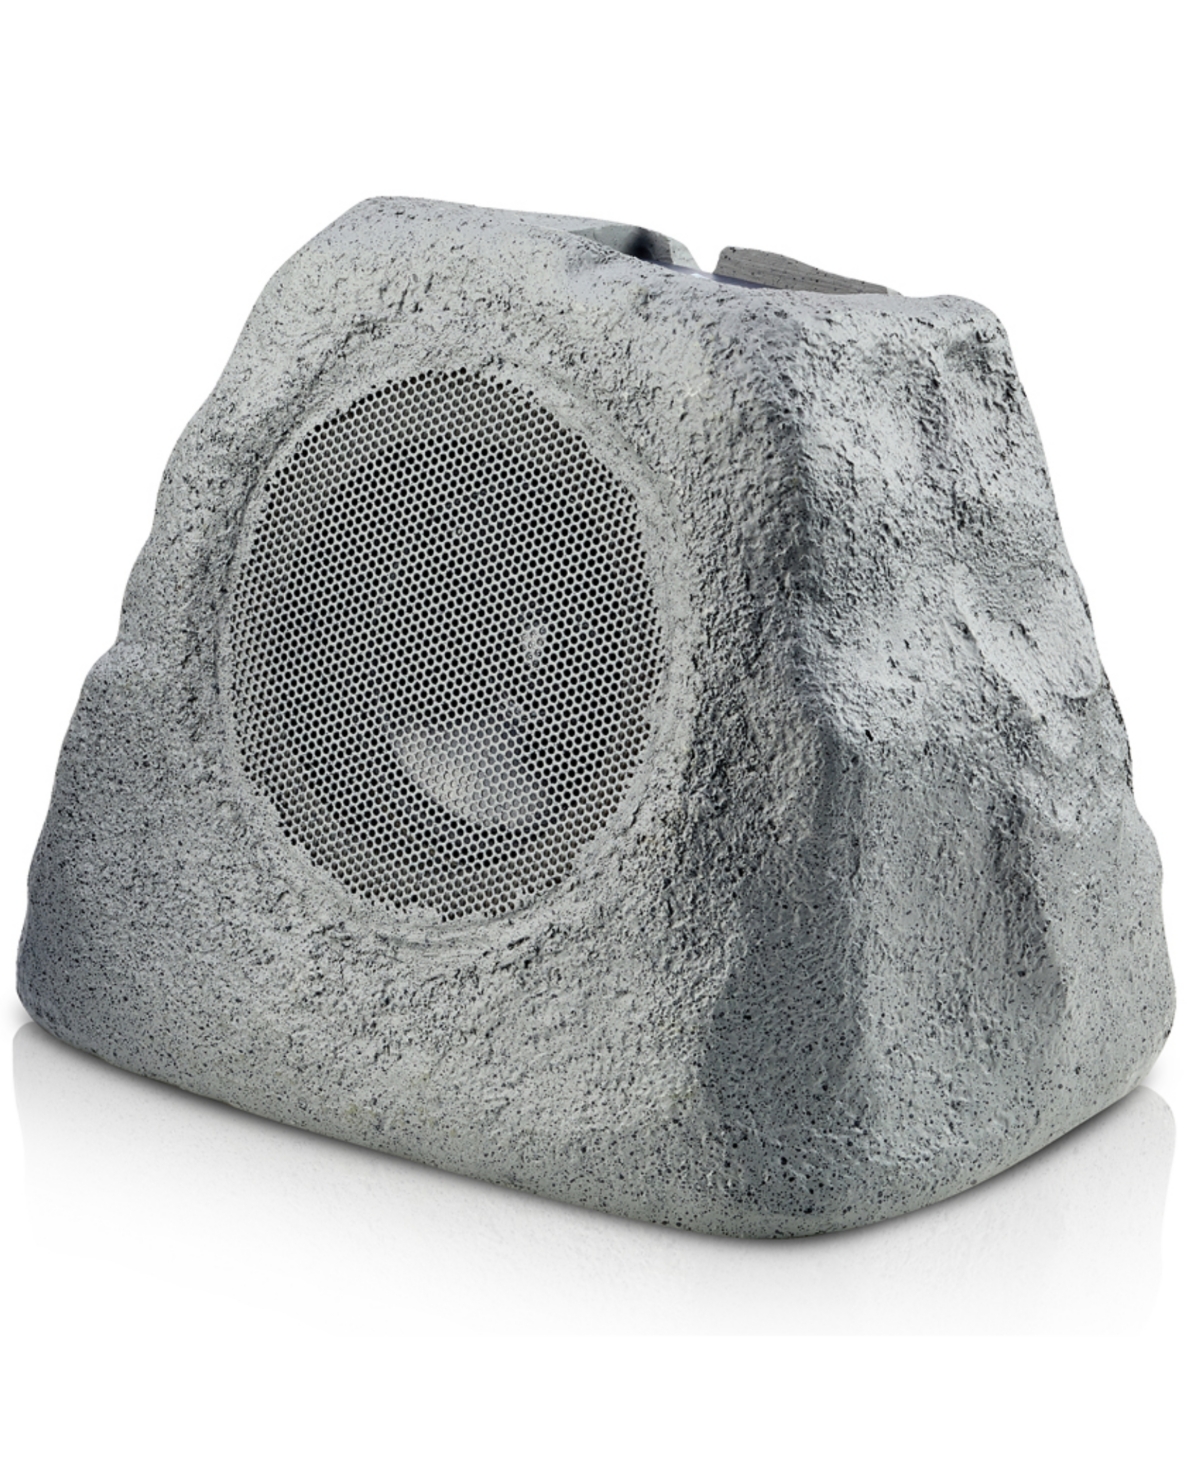 Ihome Ihrk-500ltms Solar Powered Wireless Rock Speaker In Gray